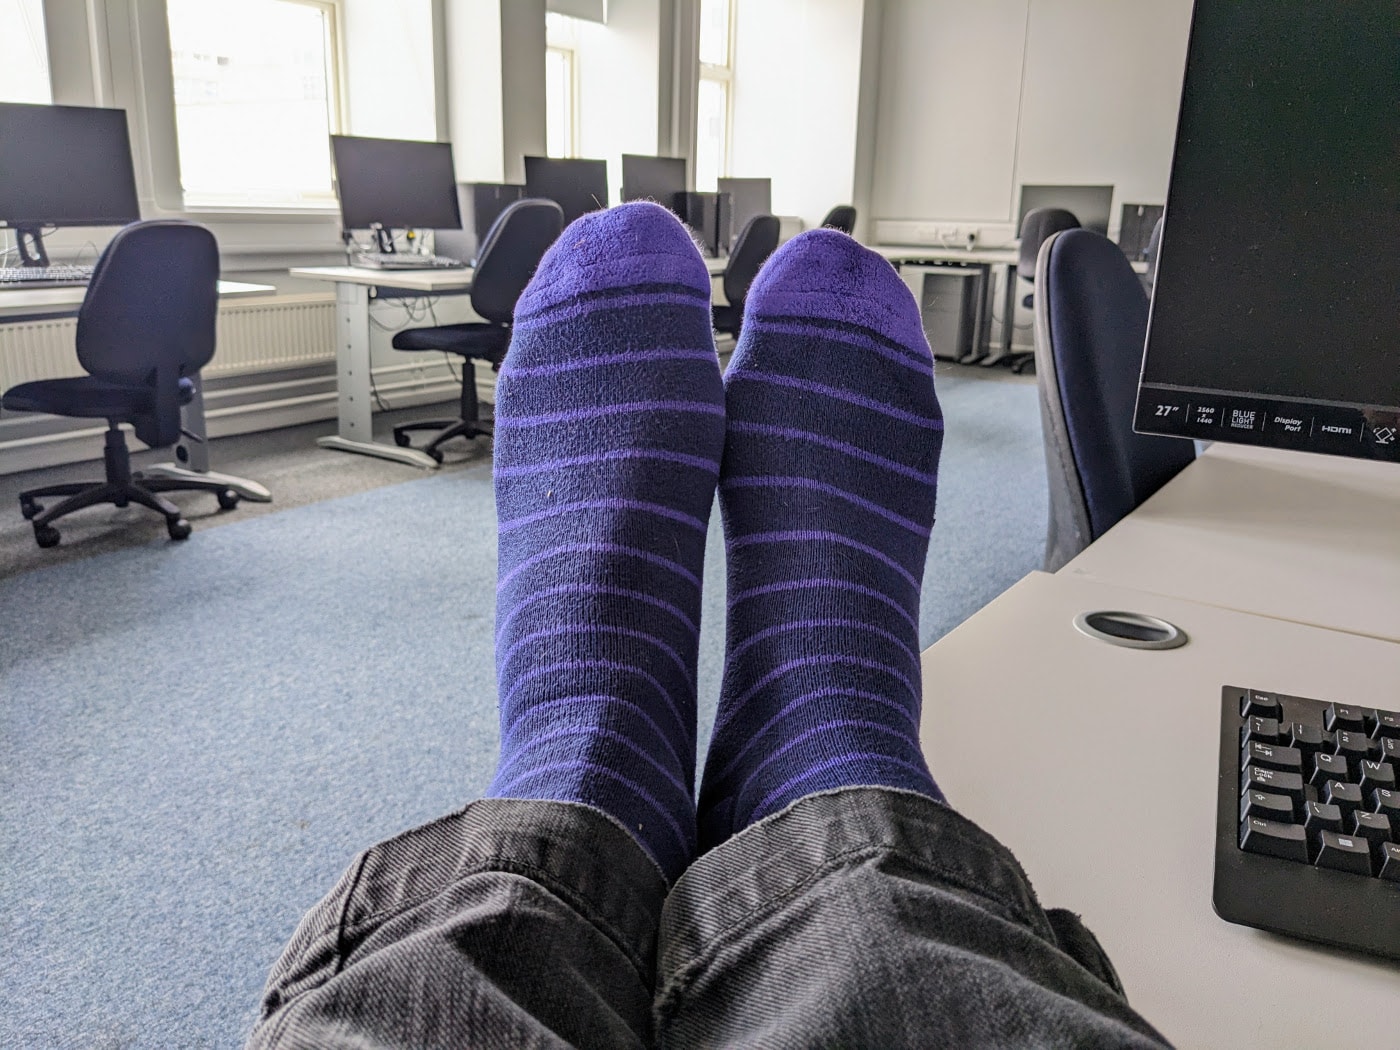 It's definitely a purple sock day